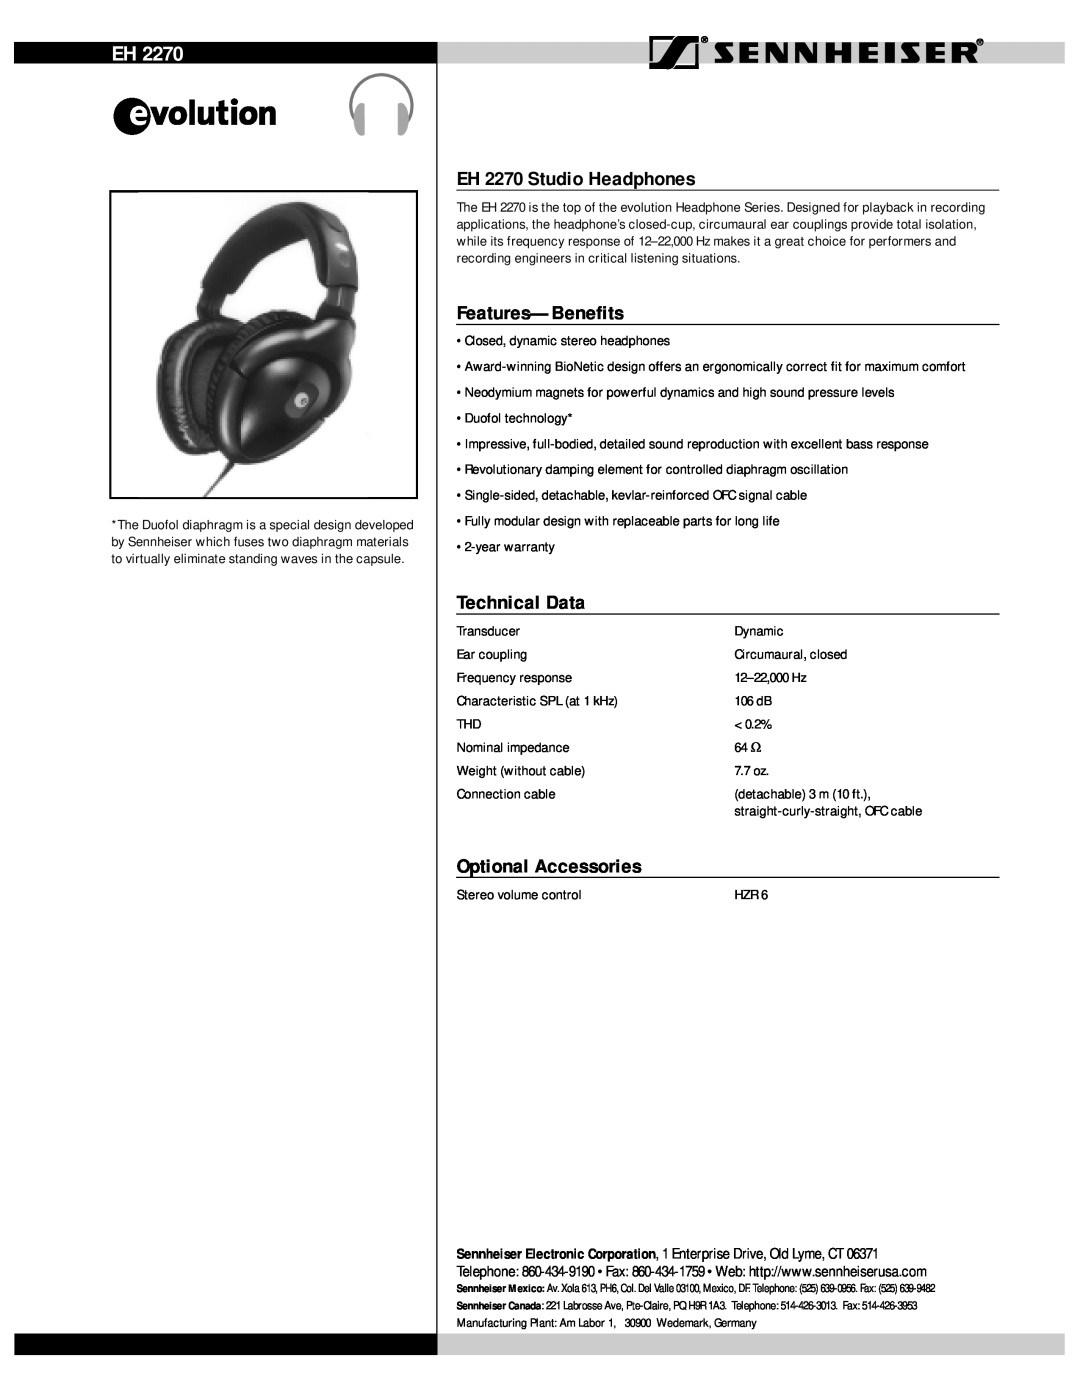 Sennheiser warranty EH 2270 Studio Headphones, Features-Benefits, Technical Data, Optional Accessories 